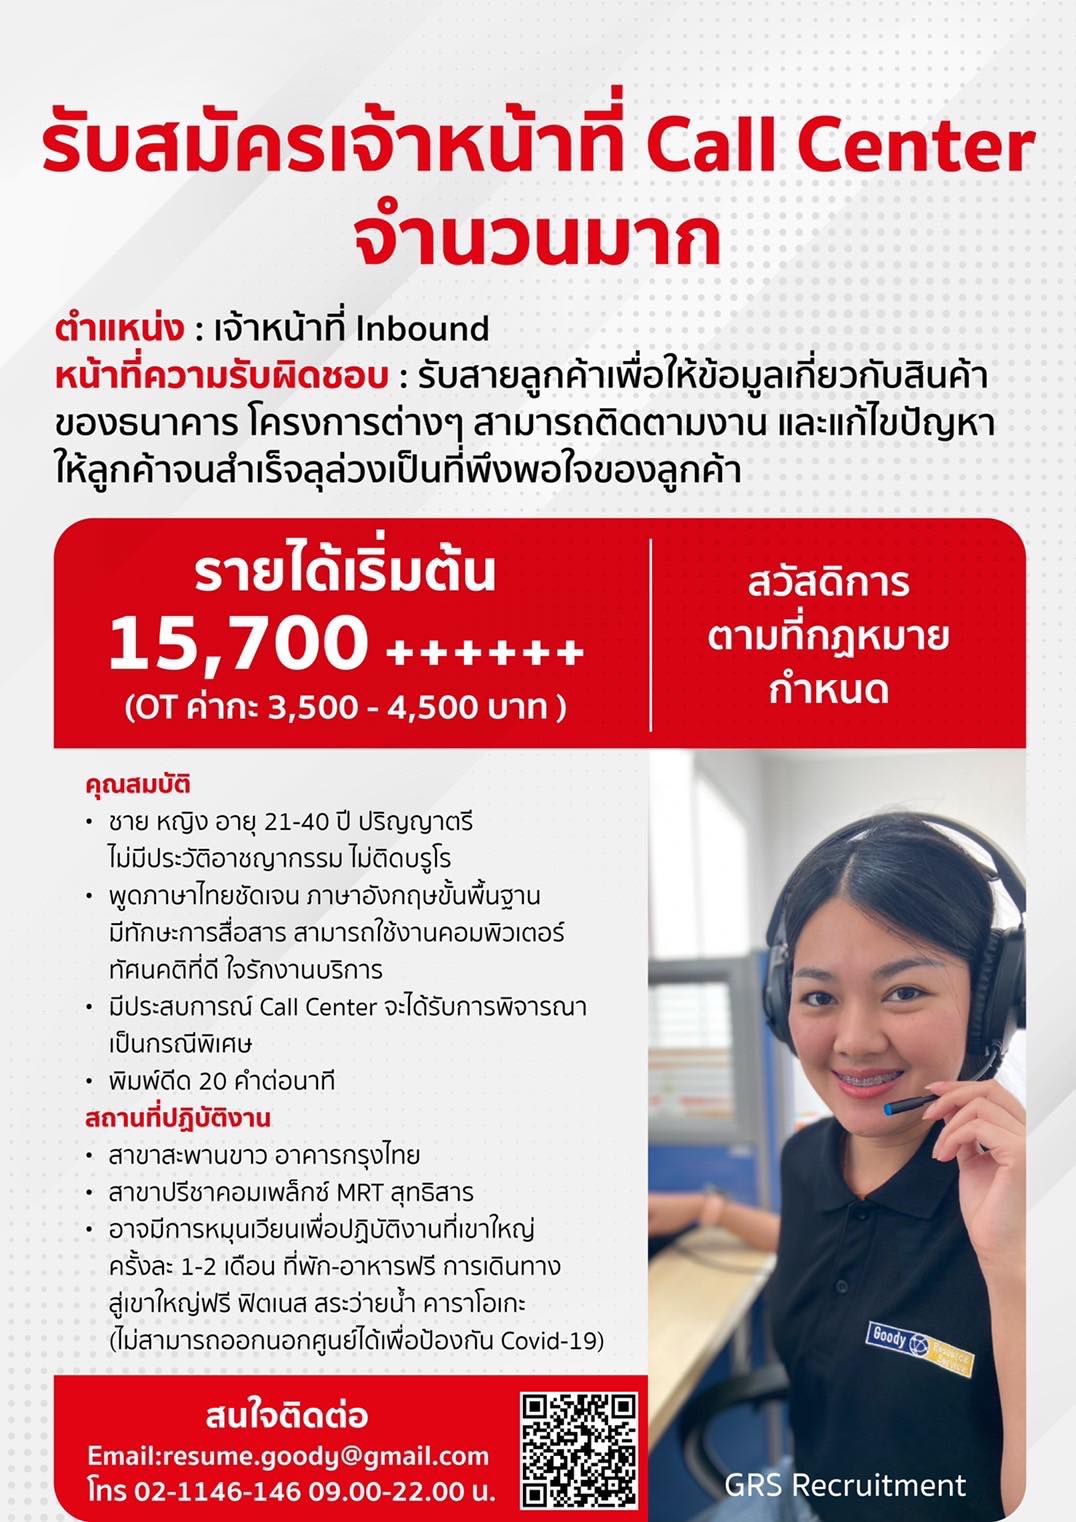 ธนาคารกรุงไทย เปิดรับสมัคร Call Center จำนวนมาก